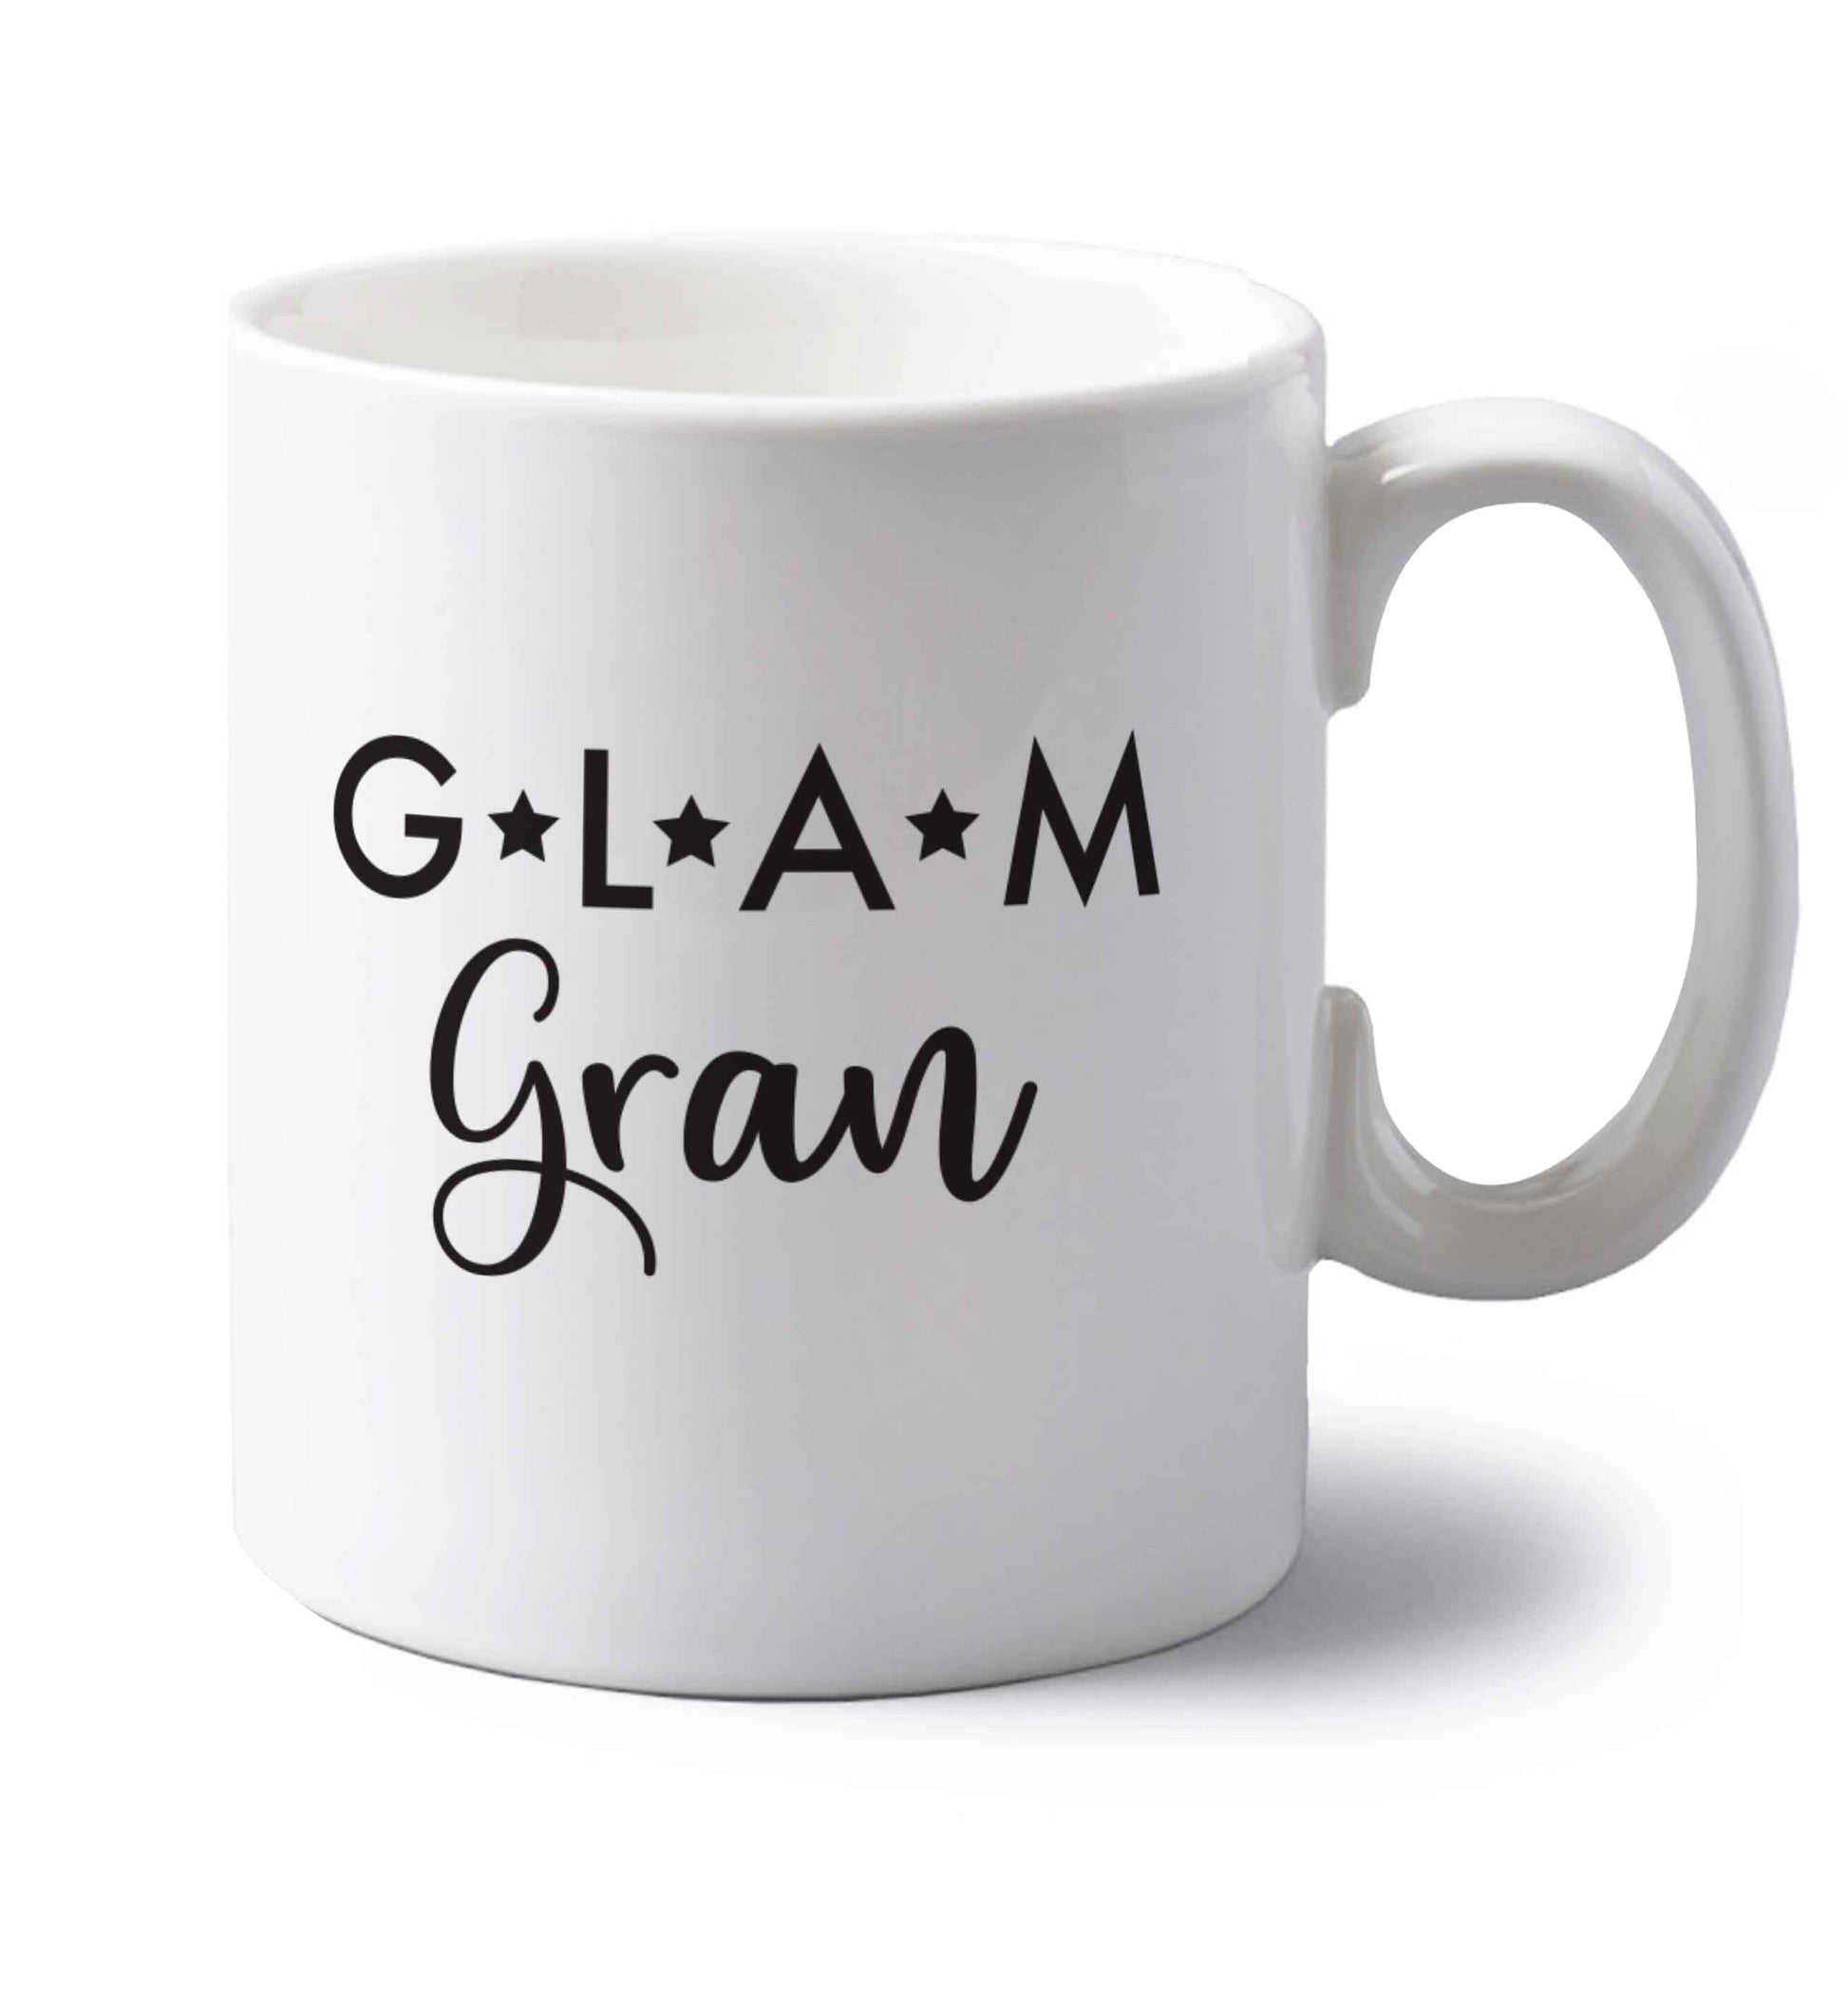 Glam Gran left handed white ceramic mug 